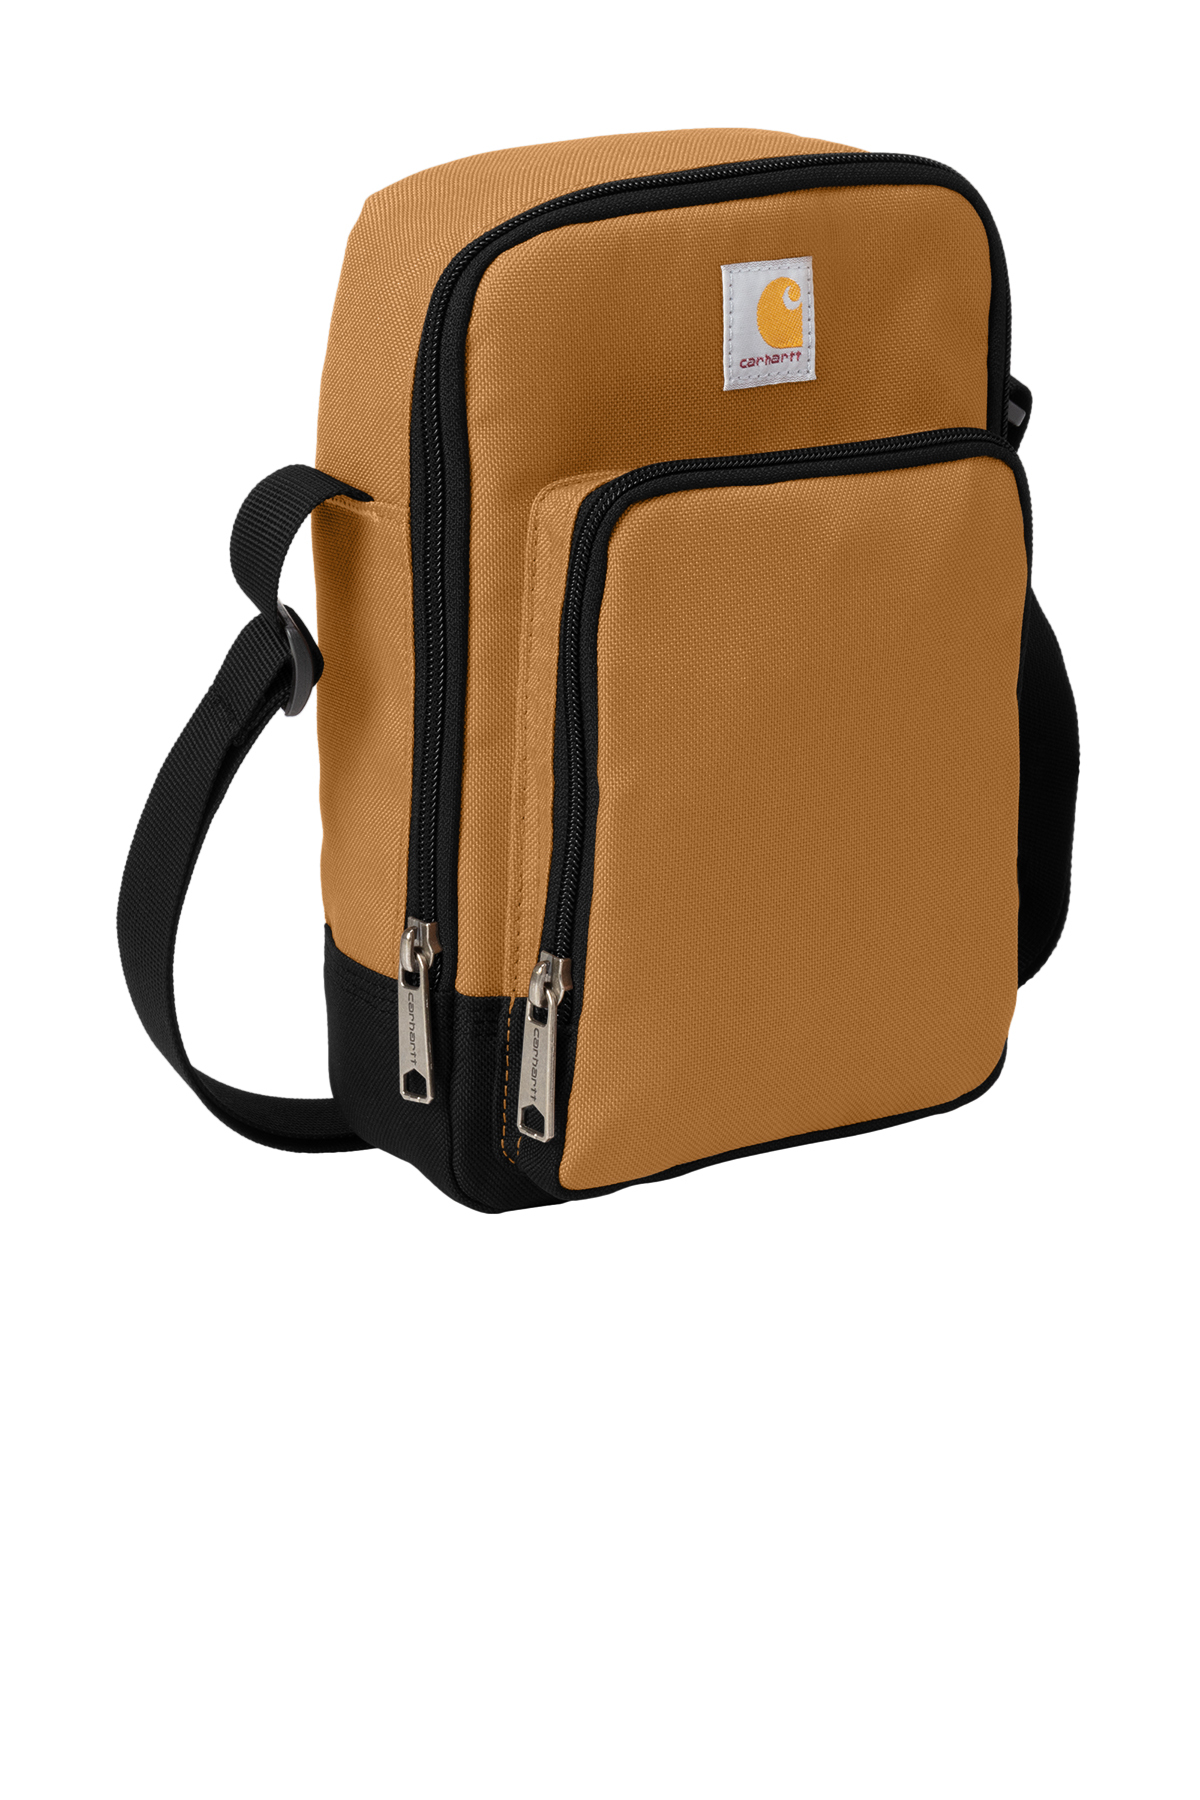 Carhartt Messenger Bag  Bags, Messenger bag, Canvas messenger bag